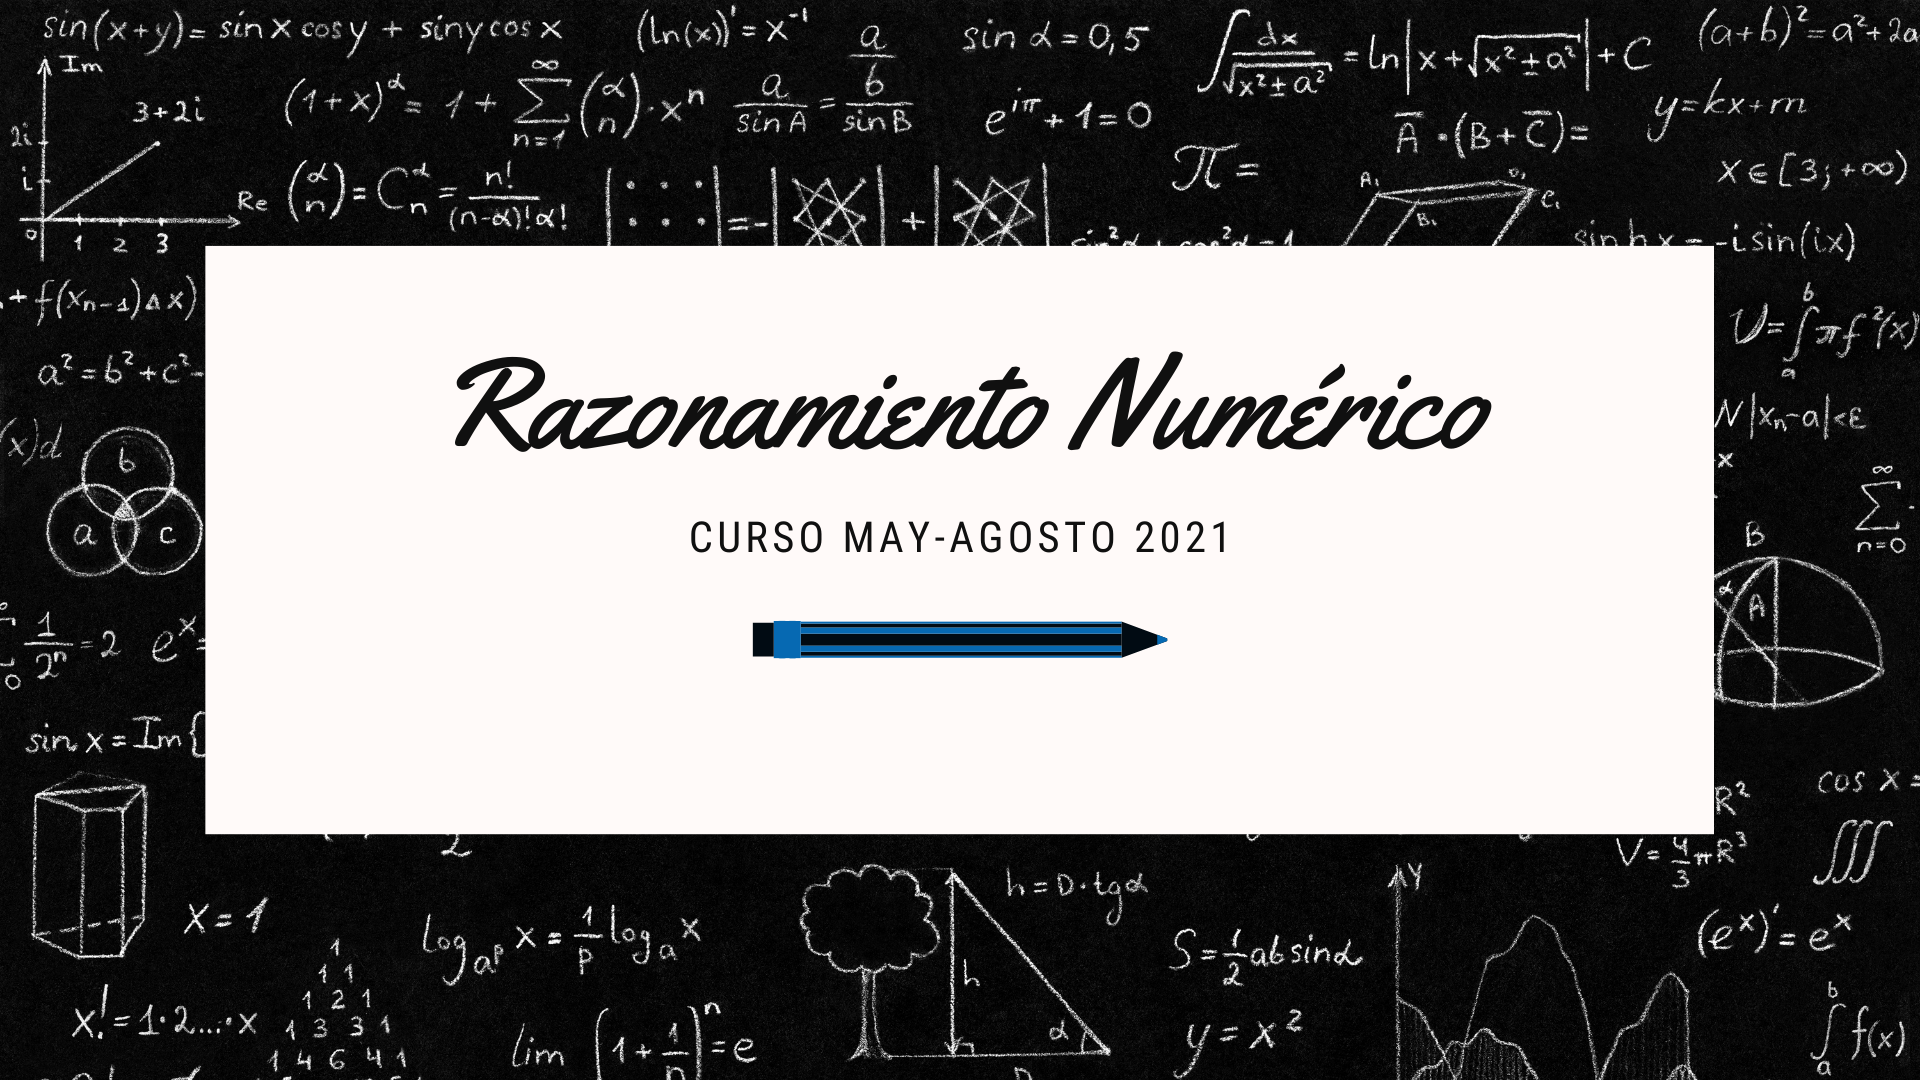 Razonamiento Numérico 2021-2 A